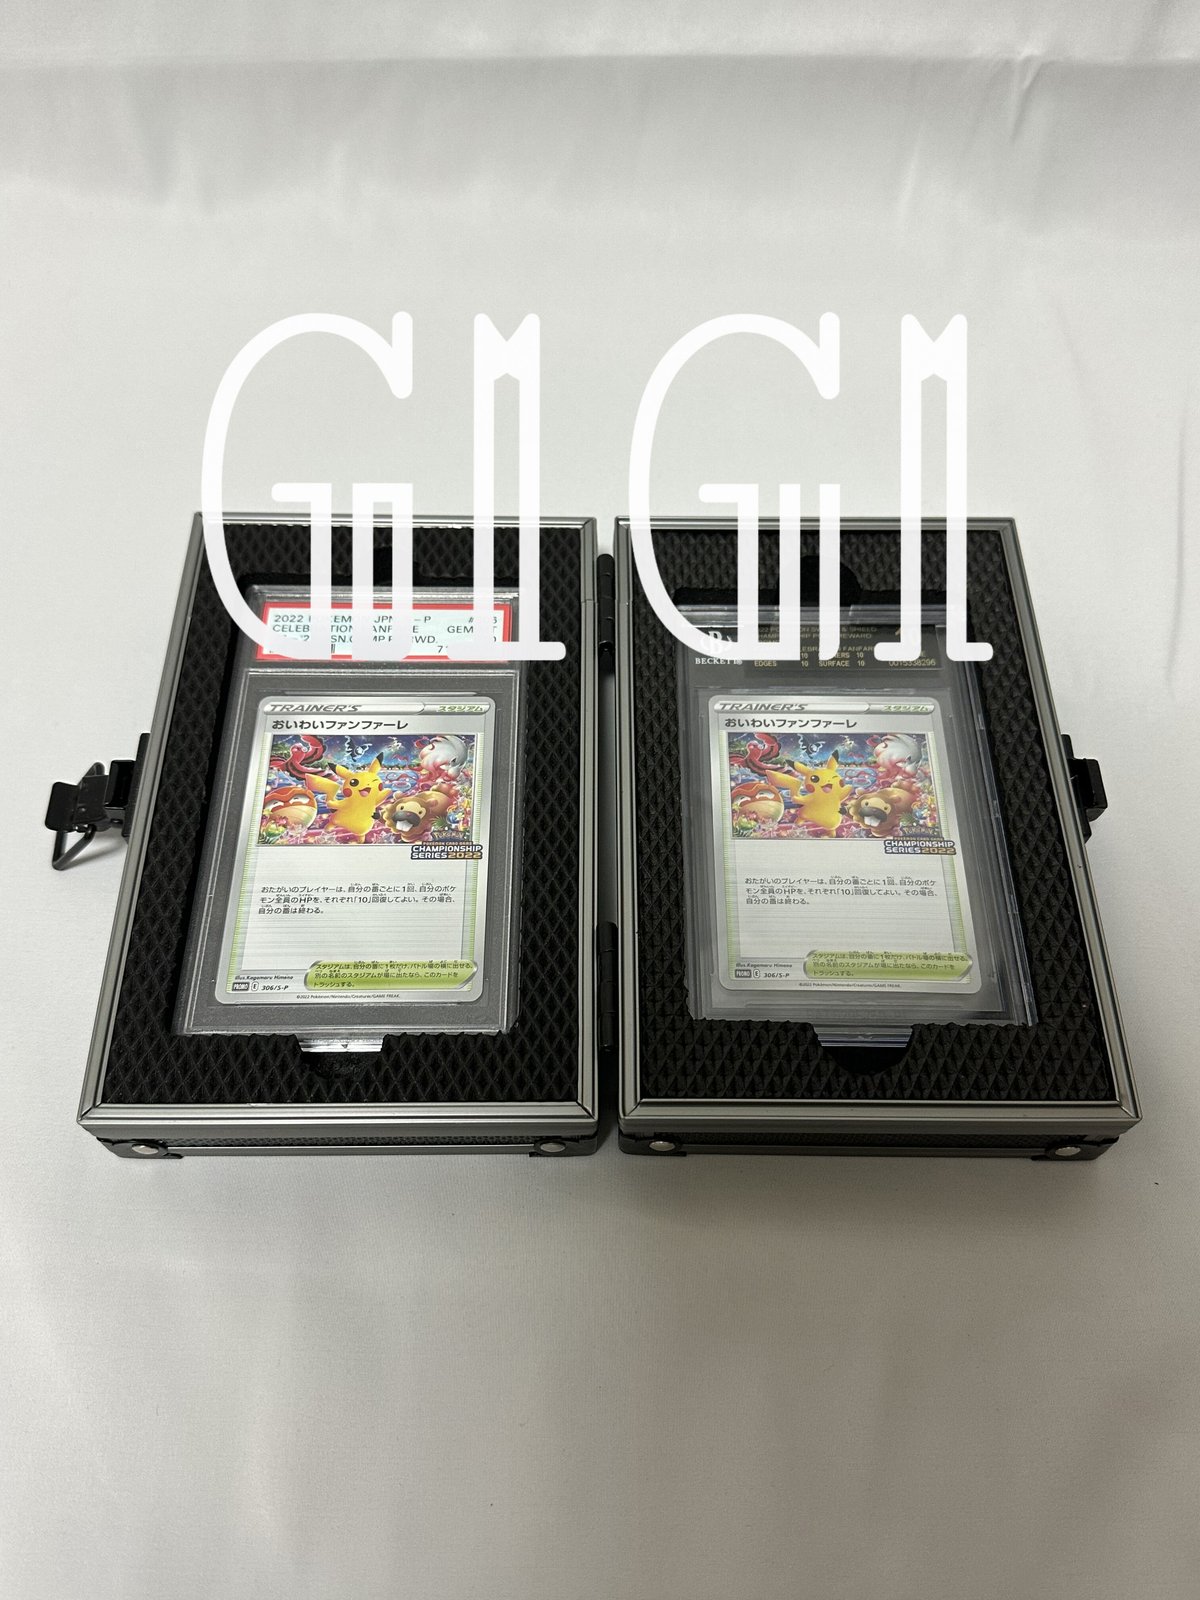 特価品「G1G1」BGS/PSA鑑定カード ケース(2枚入り)〈初期傷あり品〉